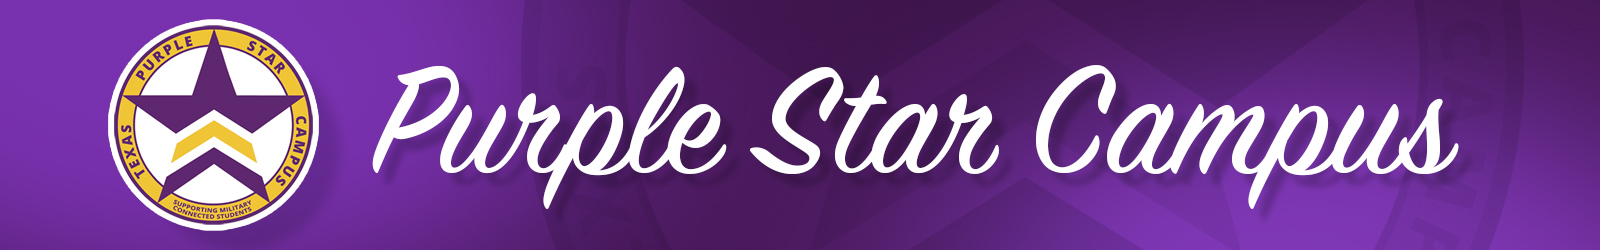 Purple Star Campus Designation